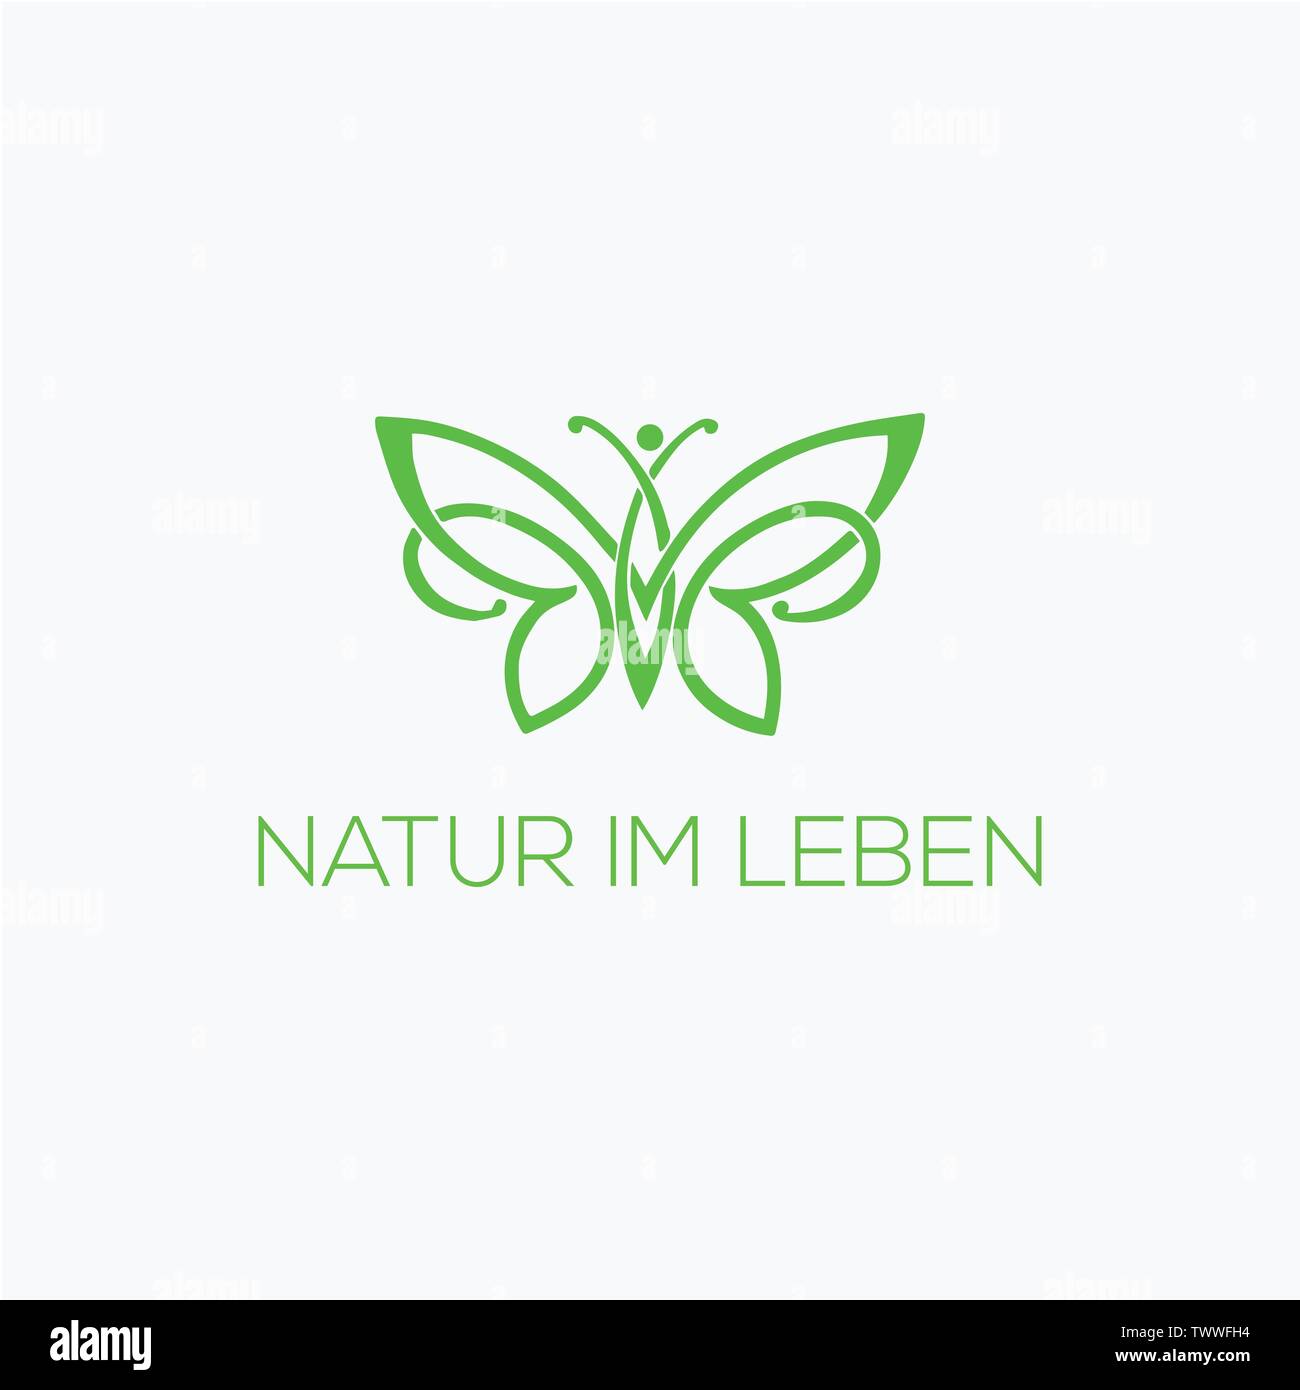 Natur Logo Design Vector in Illustrator Stock Vektor